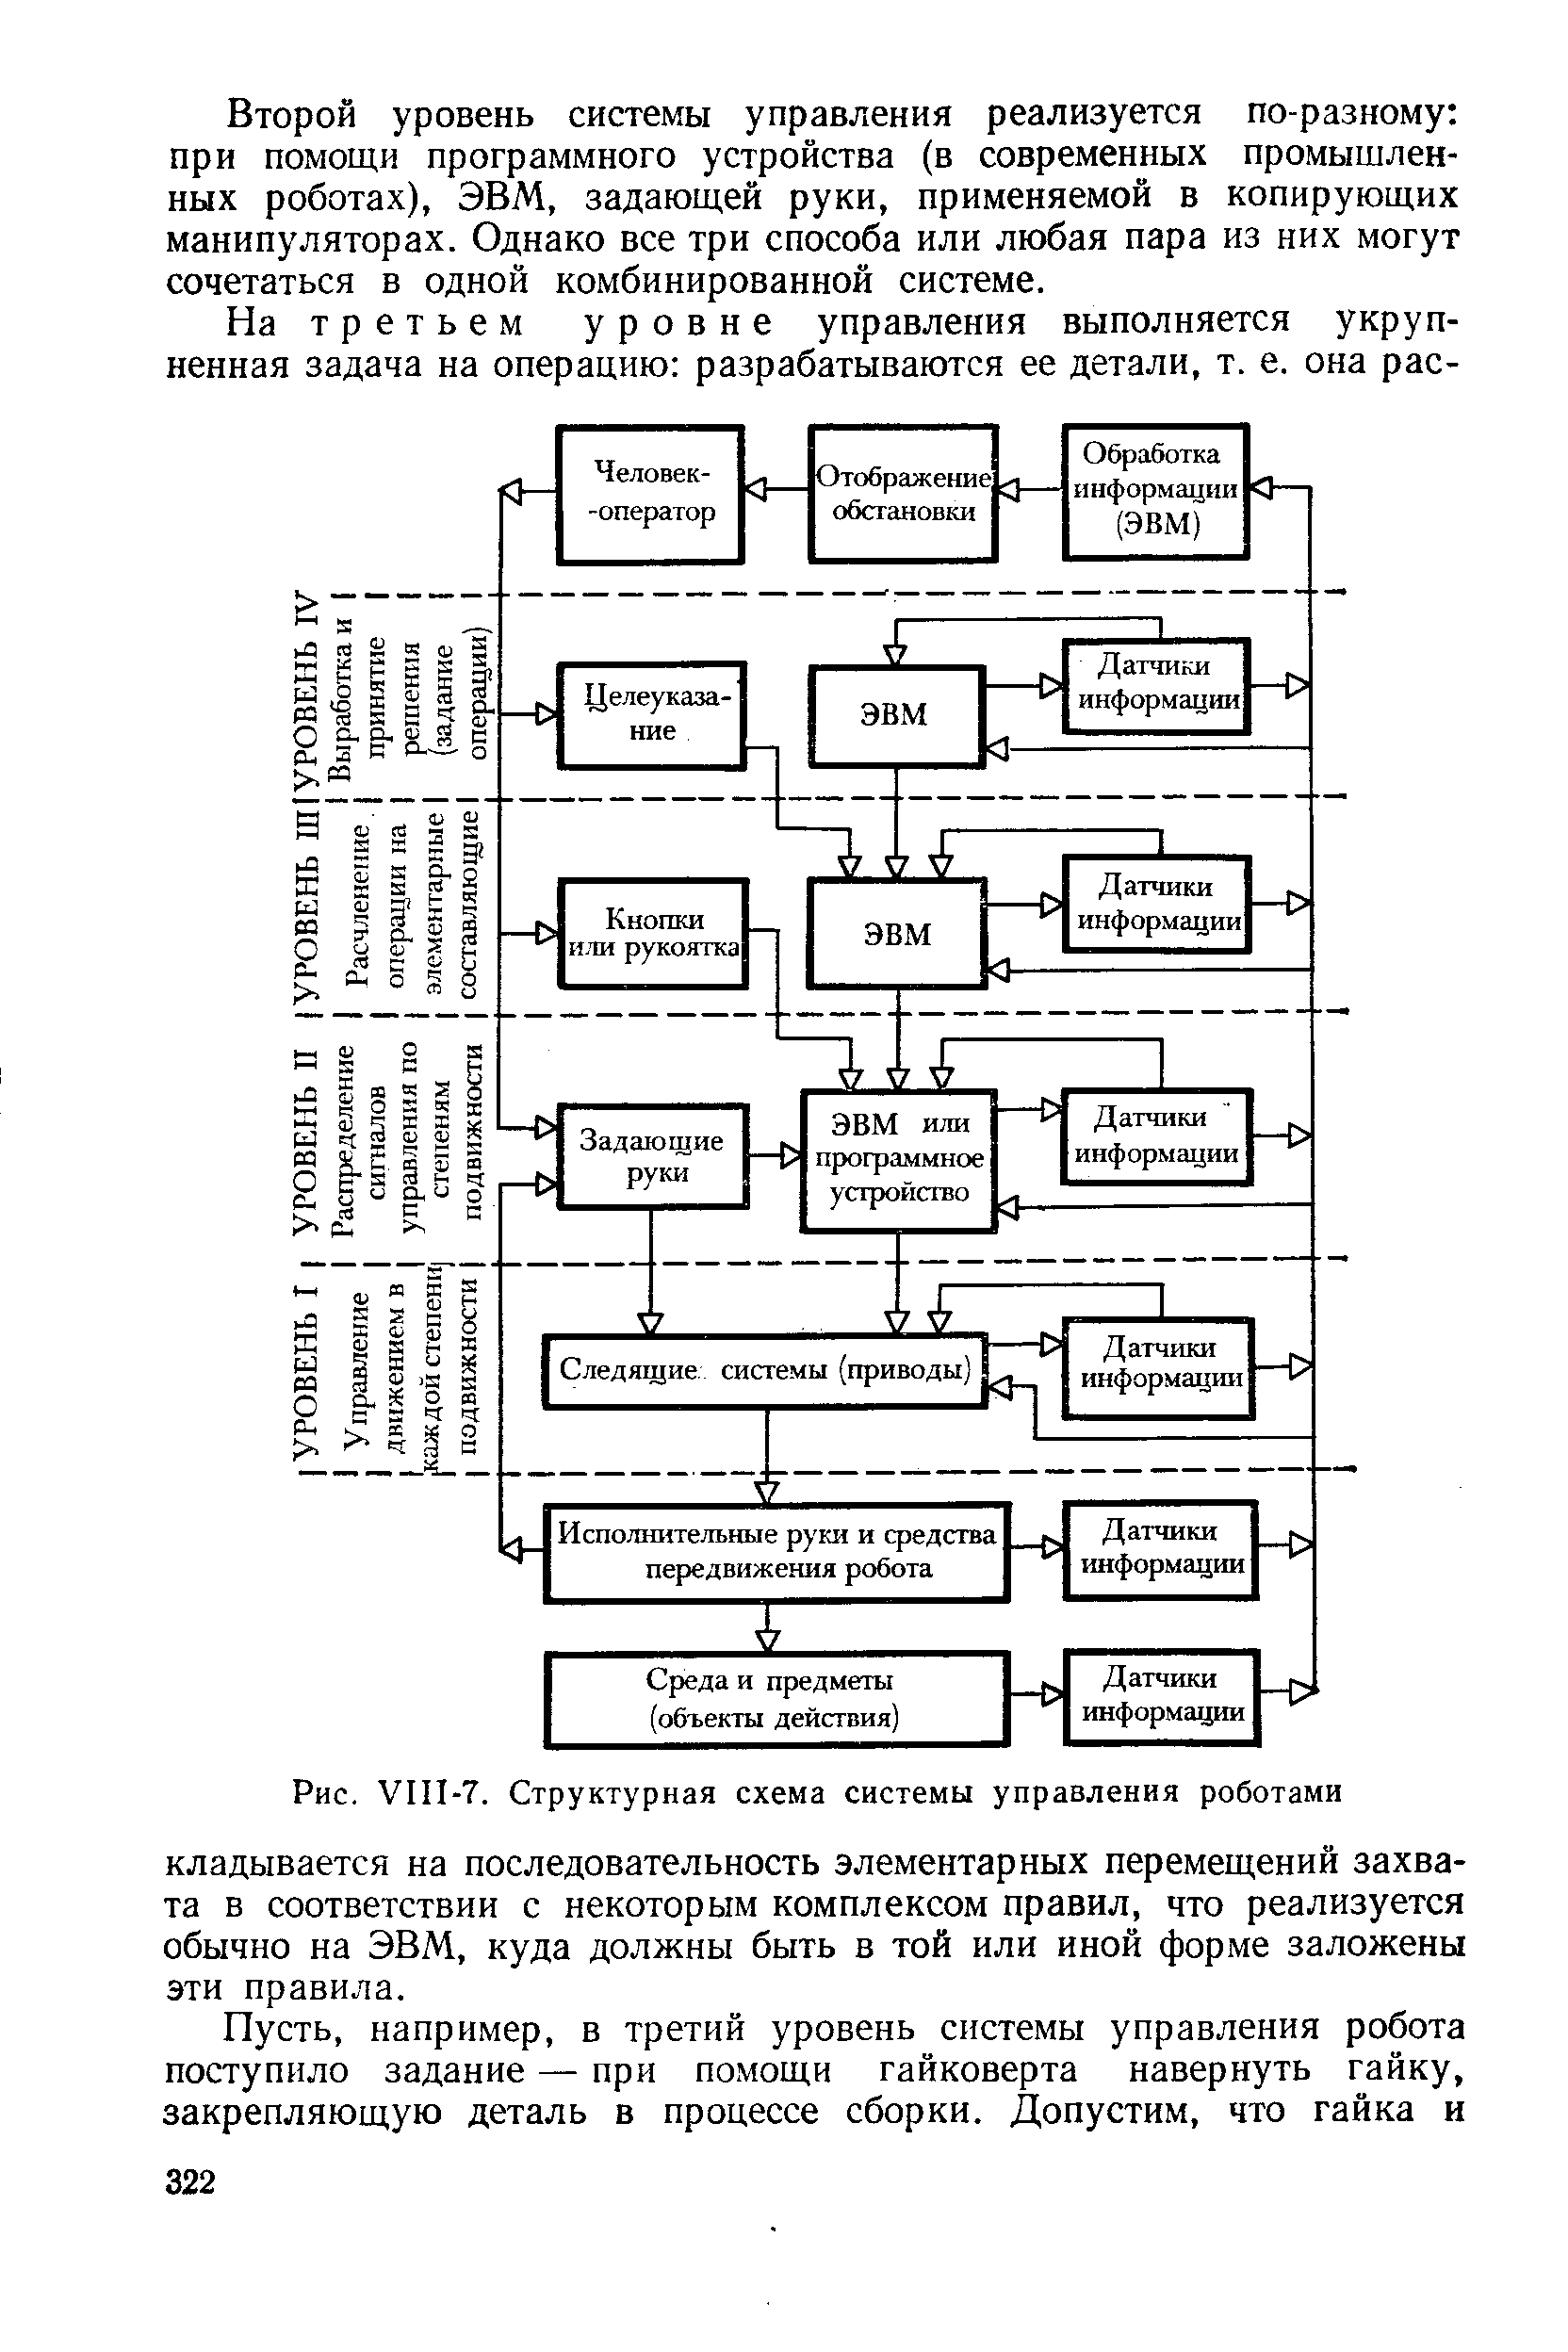 Рис. VIII-7. Структурная схема системы управления роботами
